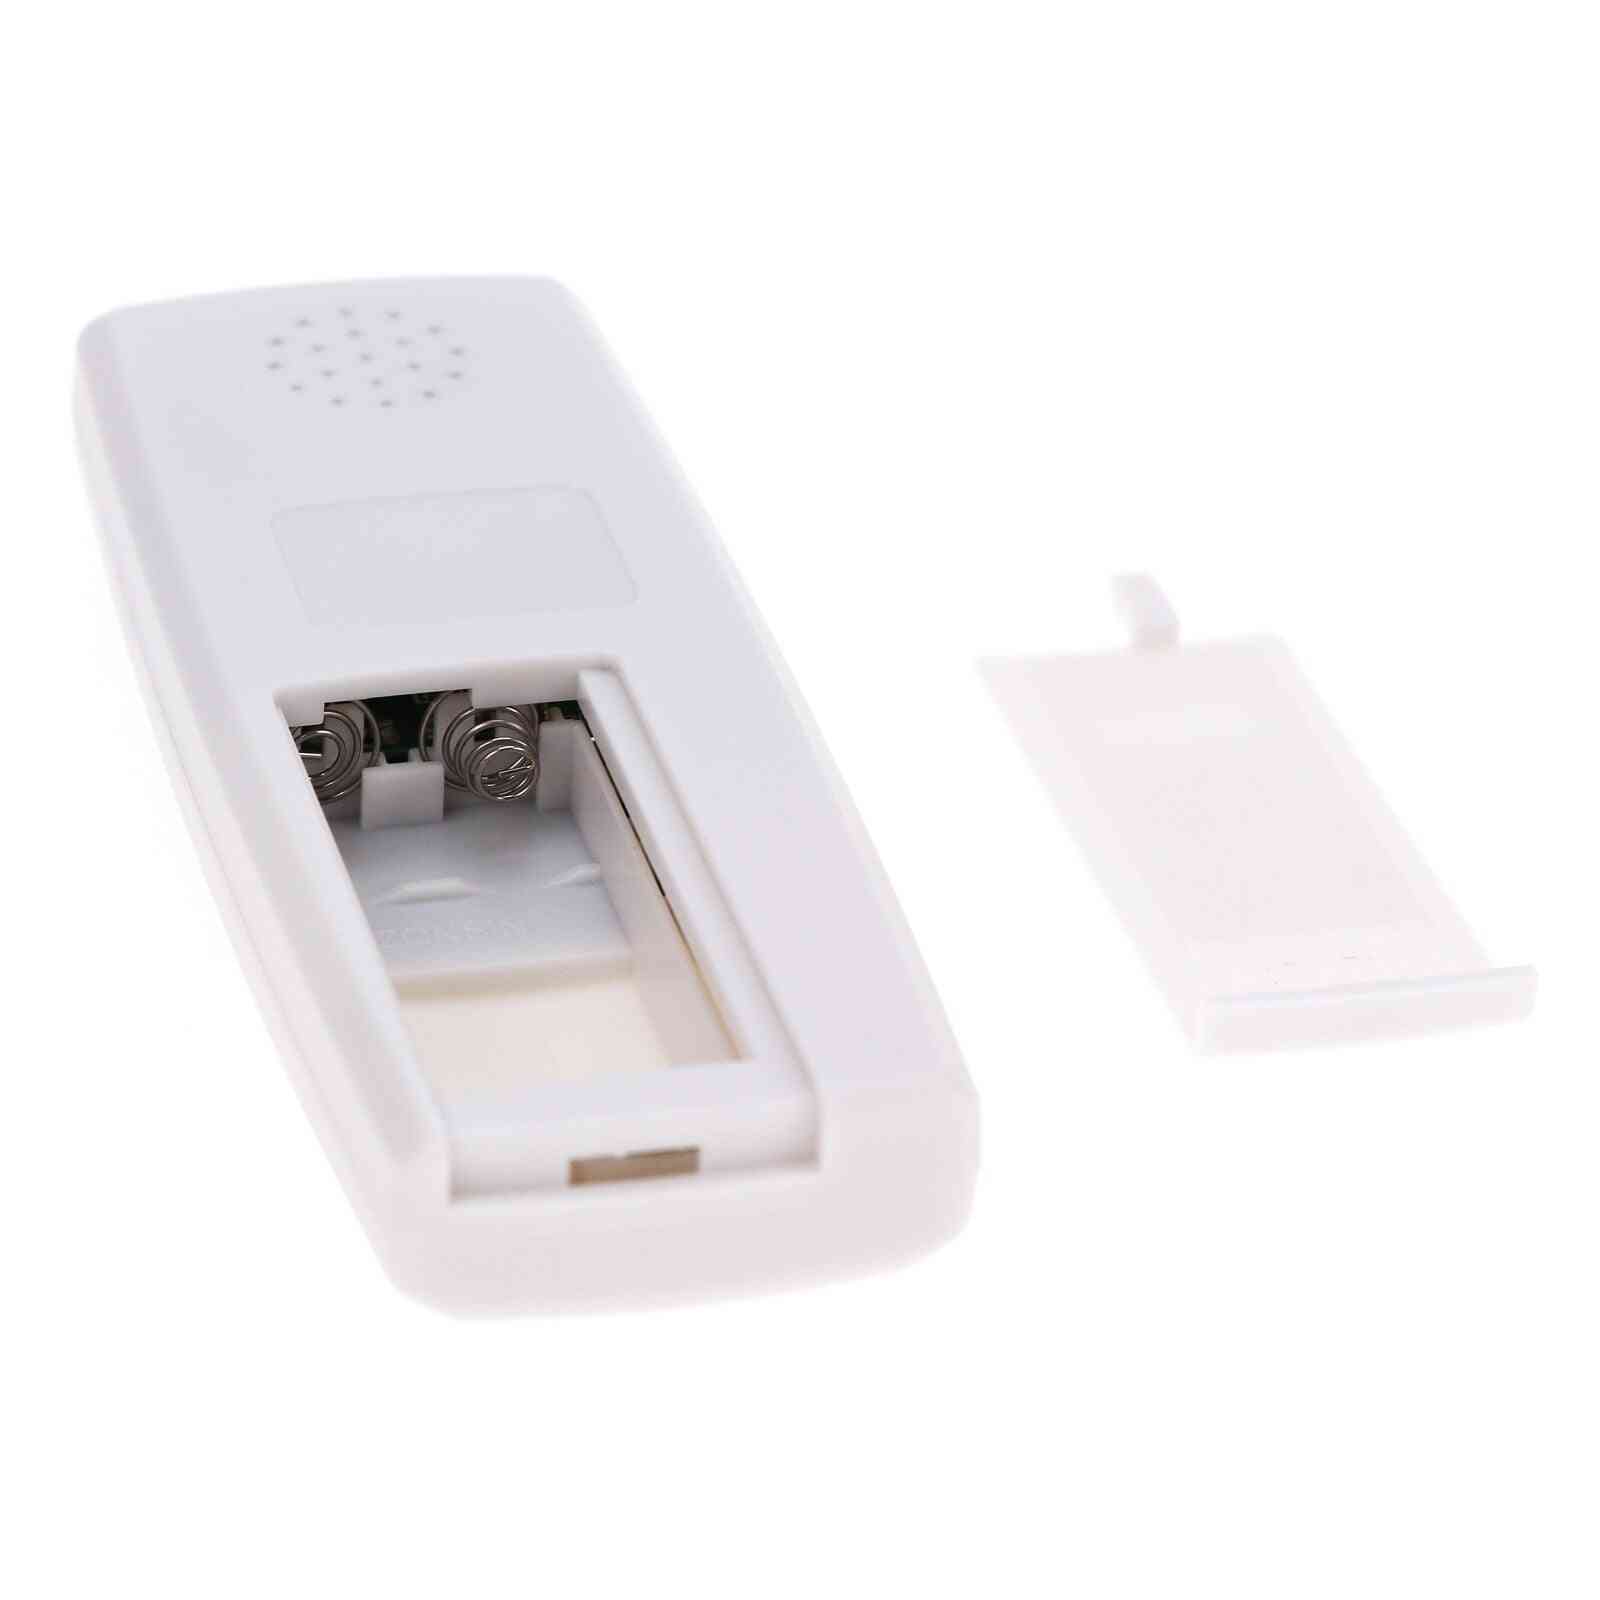 4-Frequenz-RFID-Kartenleser, Schreibkopierer, Lichtanzeige, ID-Tags